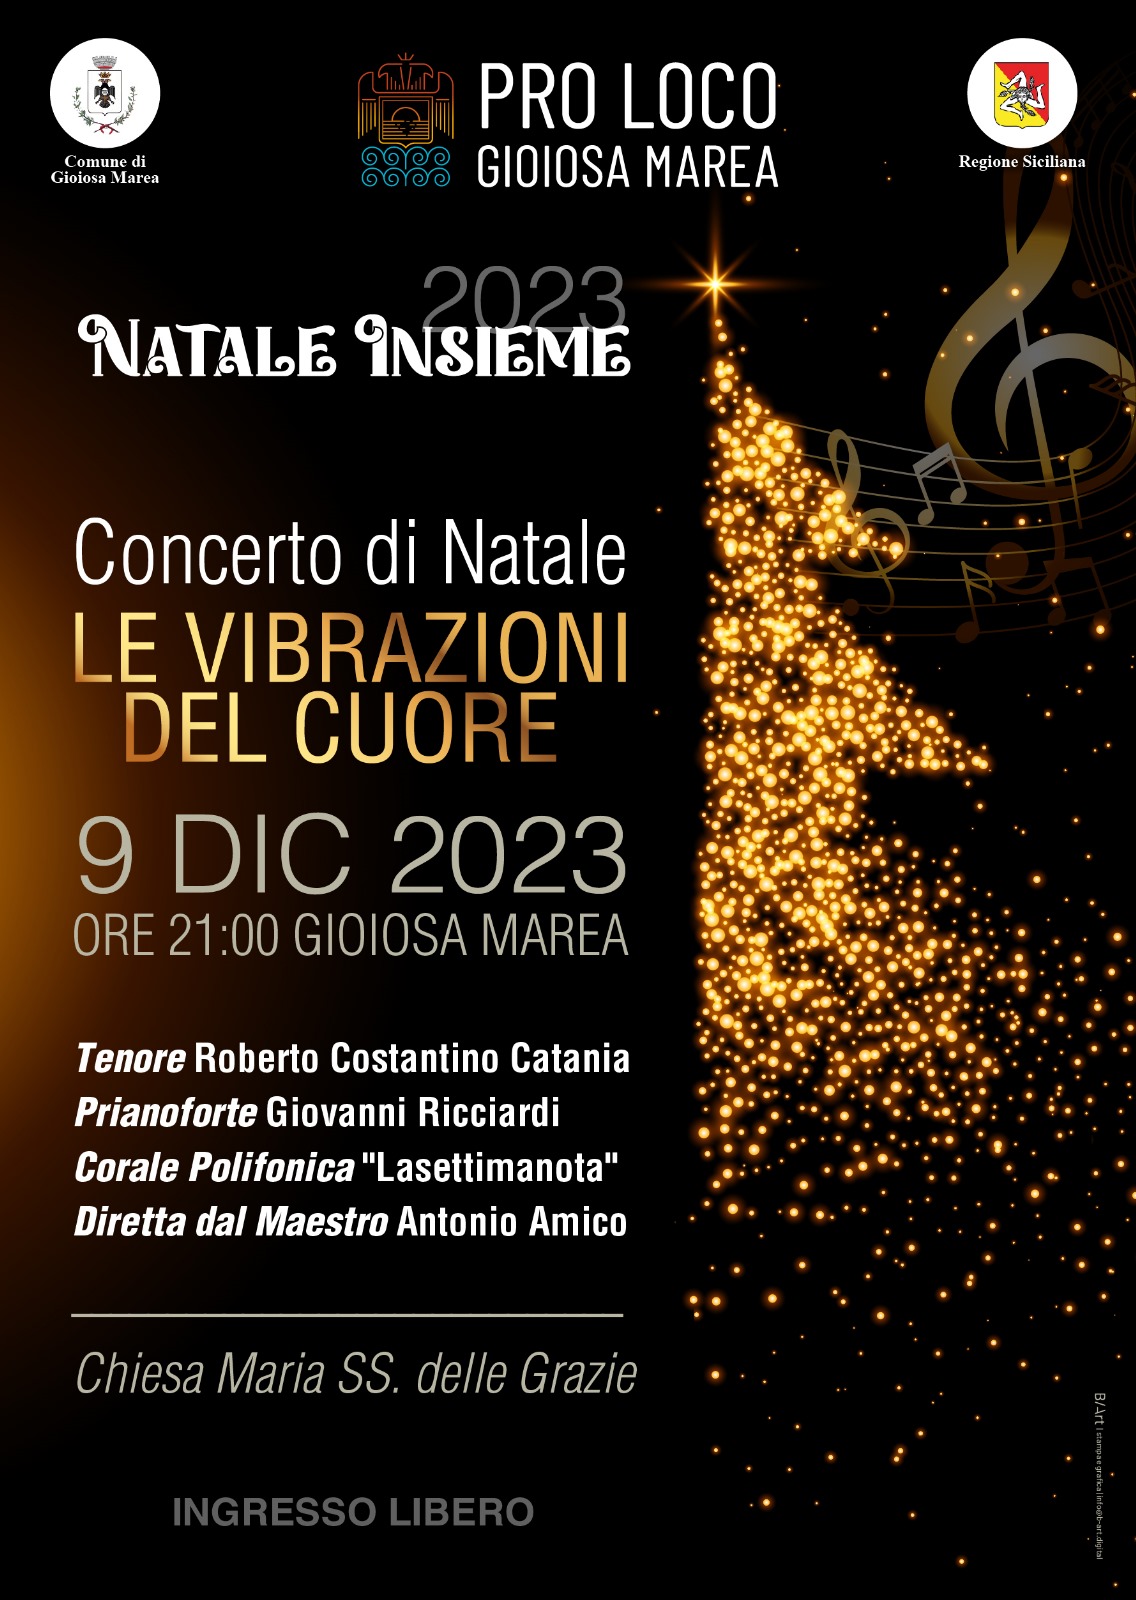 Gioiosa Marea – “NATALE INSIEME 2023” : Concerto di musiche e Canti Natalizi “Le vibrazioni del cuore”